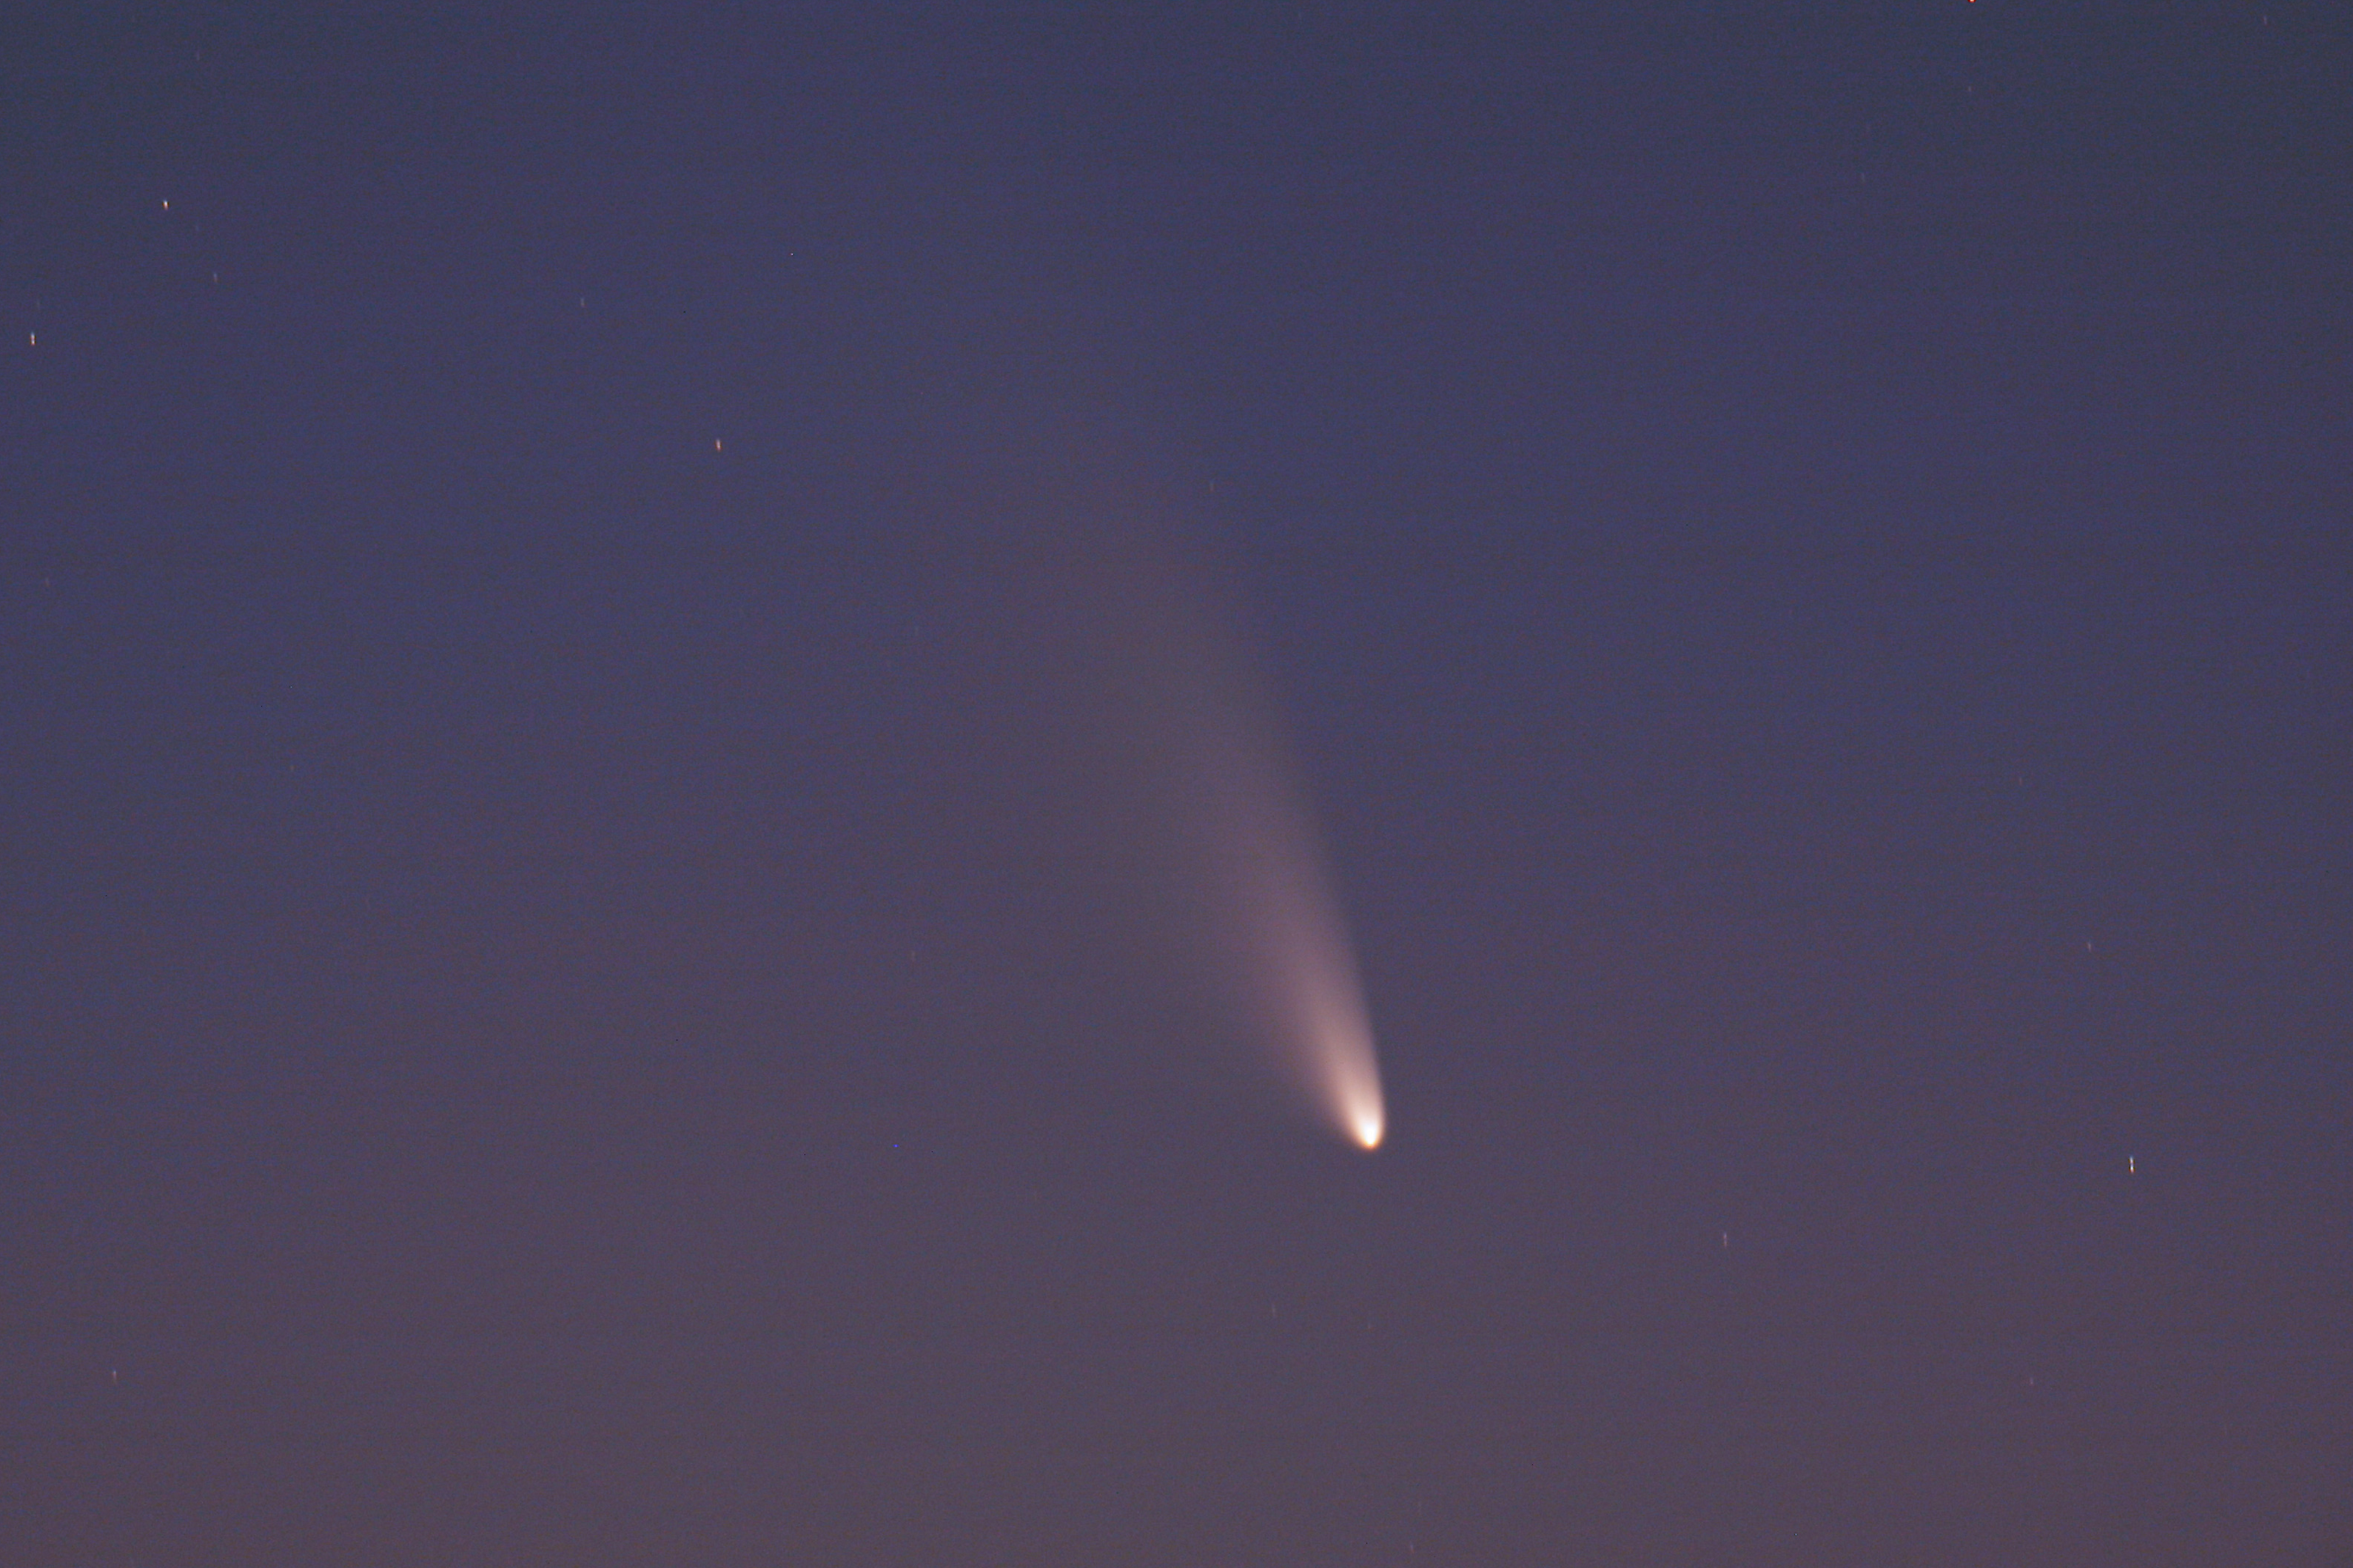 Близкий пролет кометы C/2011 L4 PANSTARRS